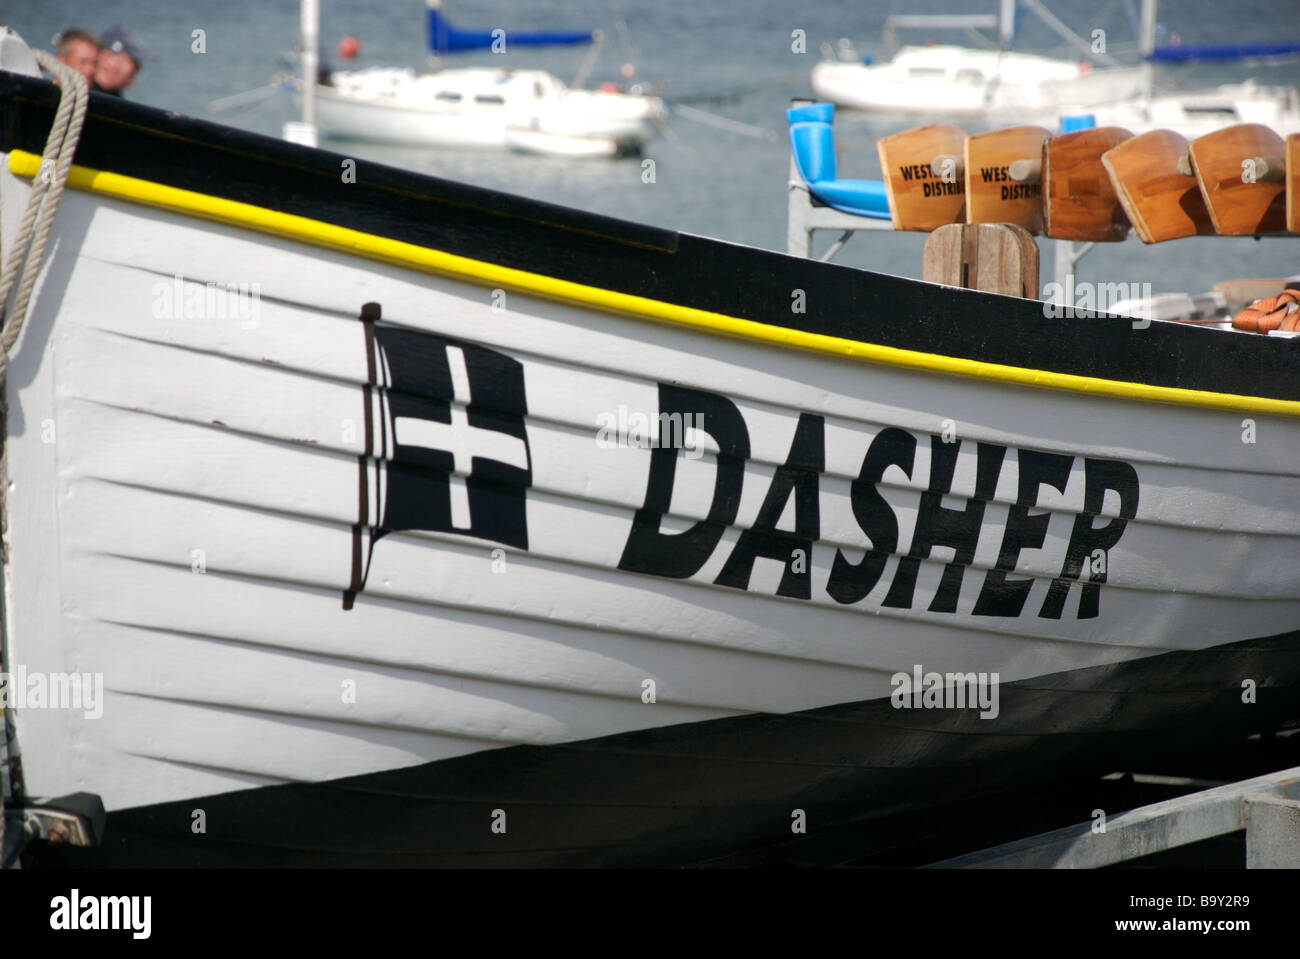 Dasher name on a gig racing boat, Saltash, Cornwall, UK Stock Photo